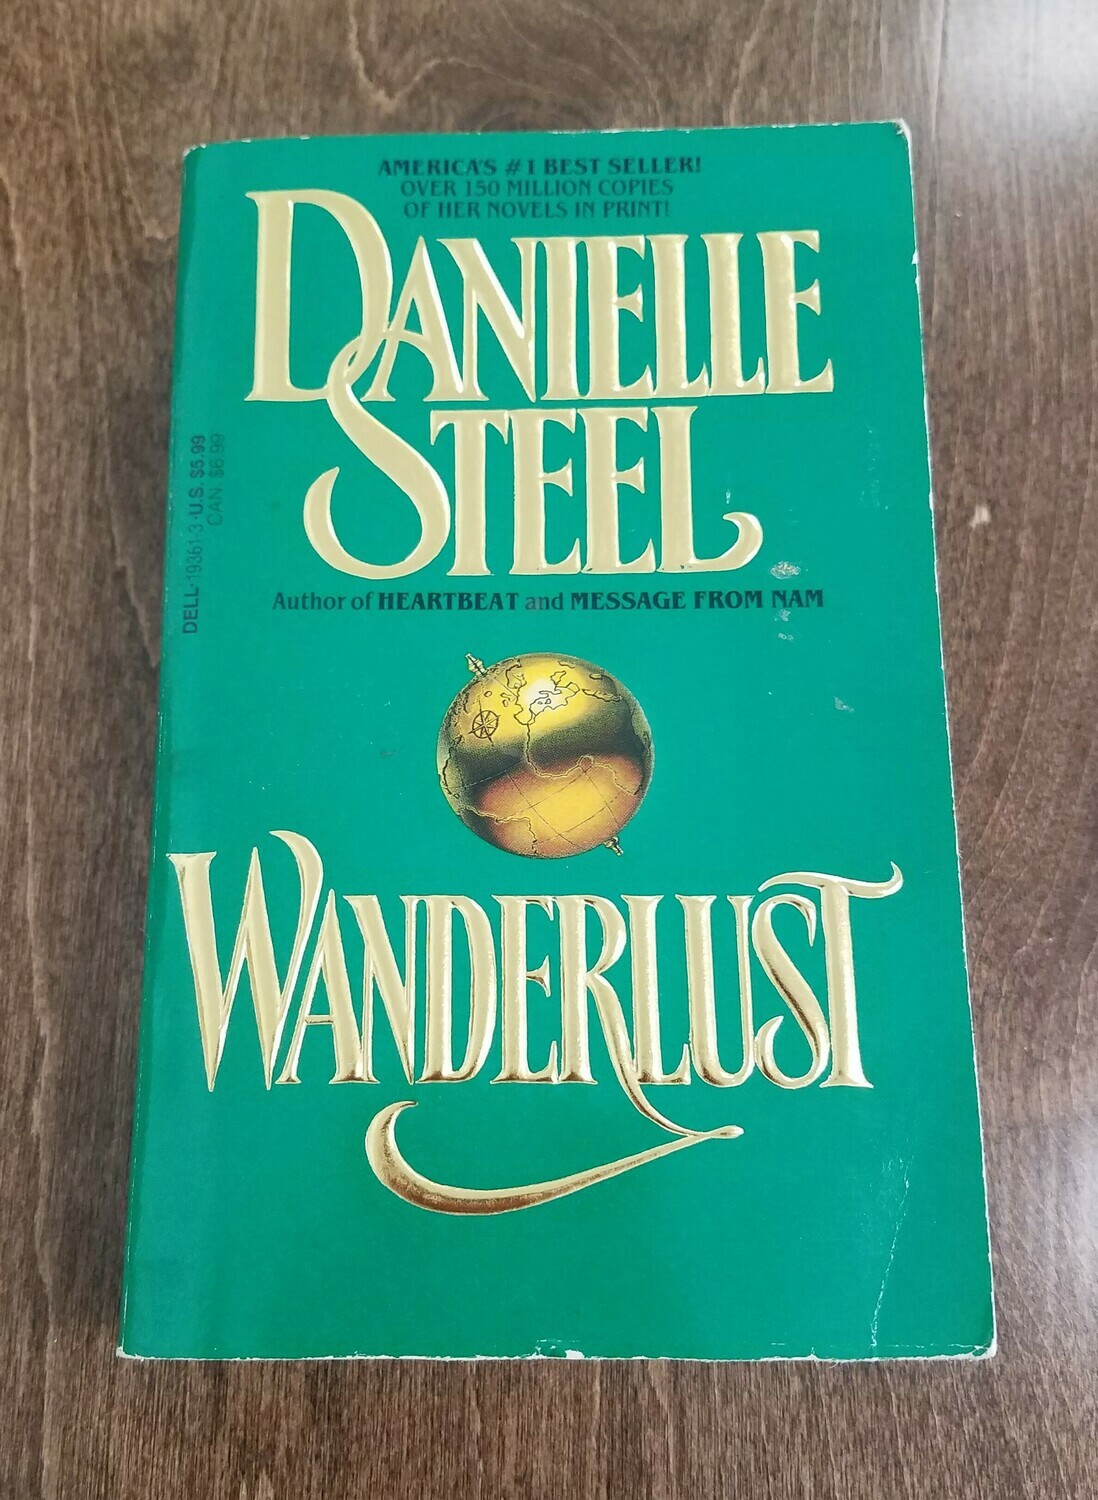 Wanderlust by Danielle Steel